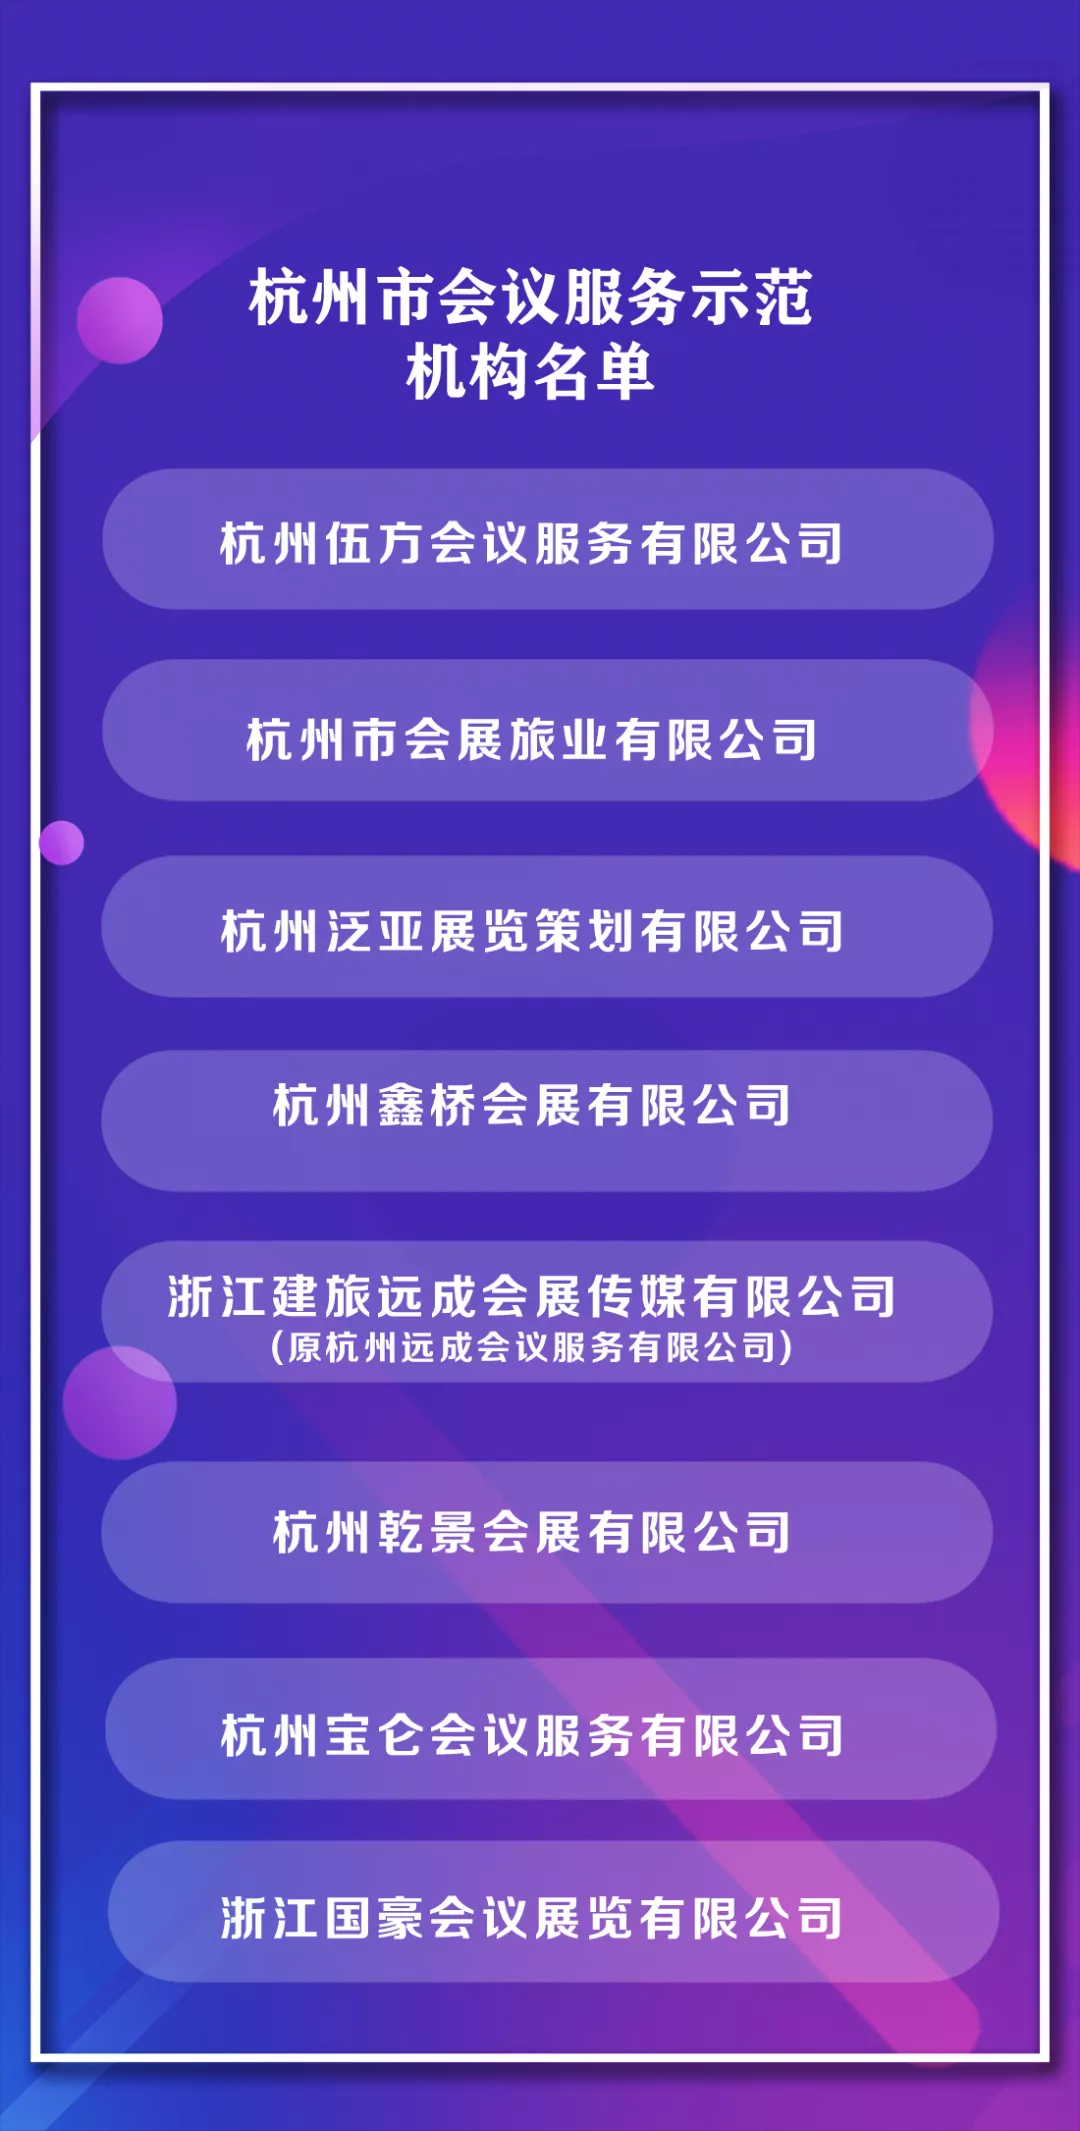 杭州会议服务示范机构名单